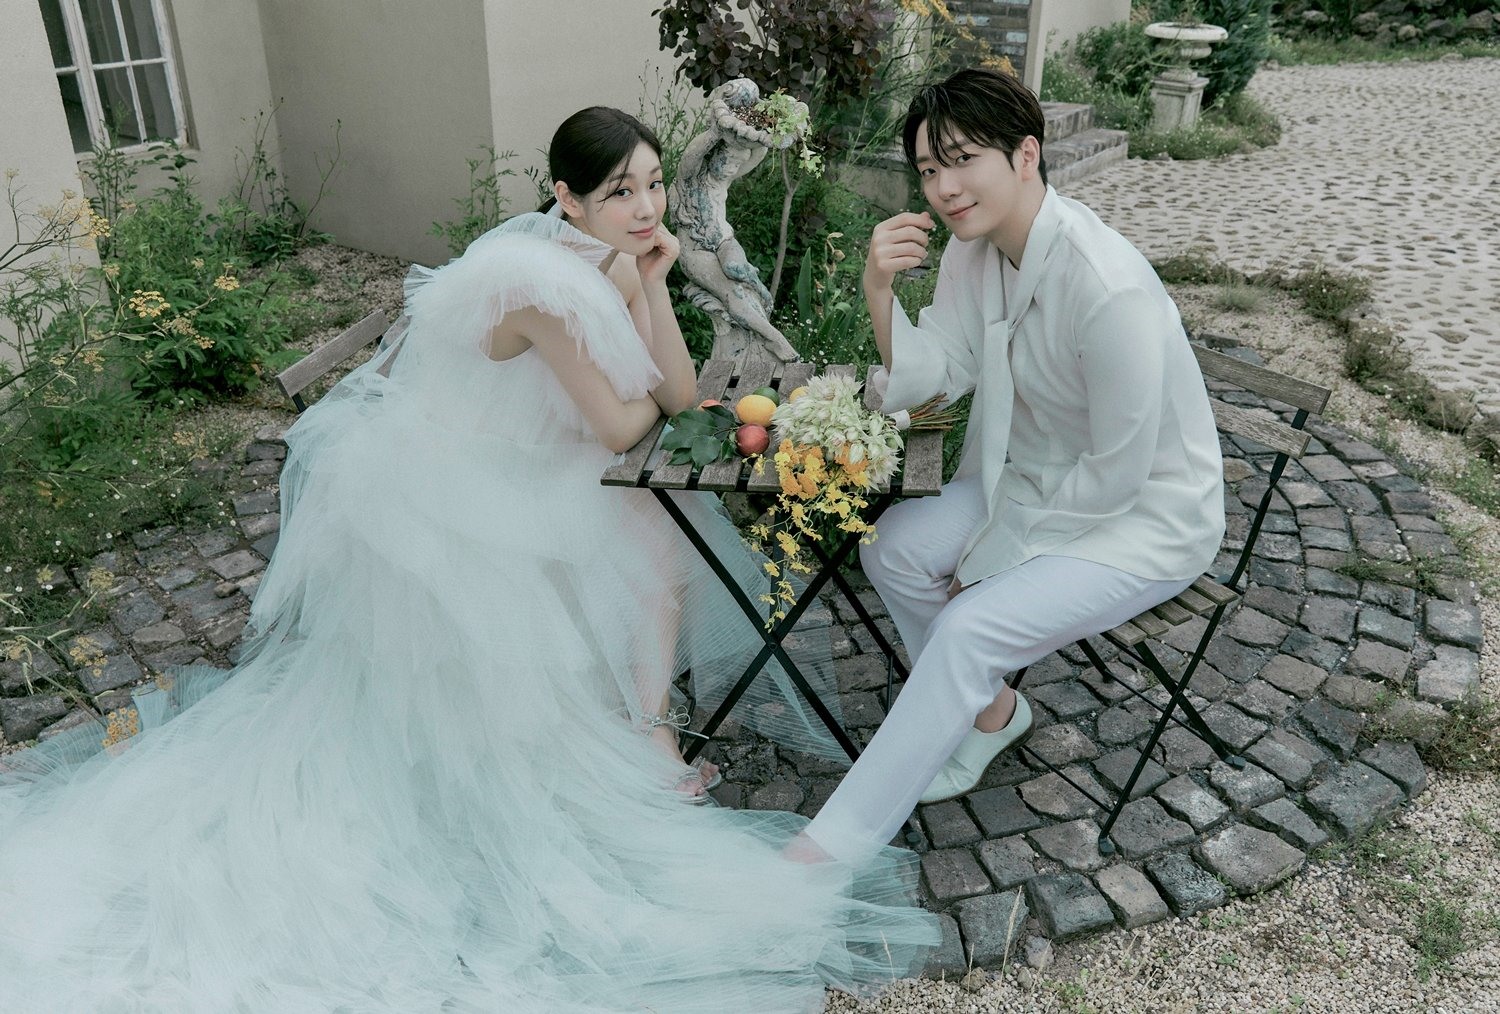 Sau 3 năm bên nhau, Kim Yuna và Ko Woo Rim đã chính thức về chung một nhà. Cặp đôi nhận được rất nhiều lời chúc phúc từ người hâm mộ, khán giả. Ảnh: Twitter